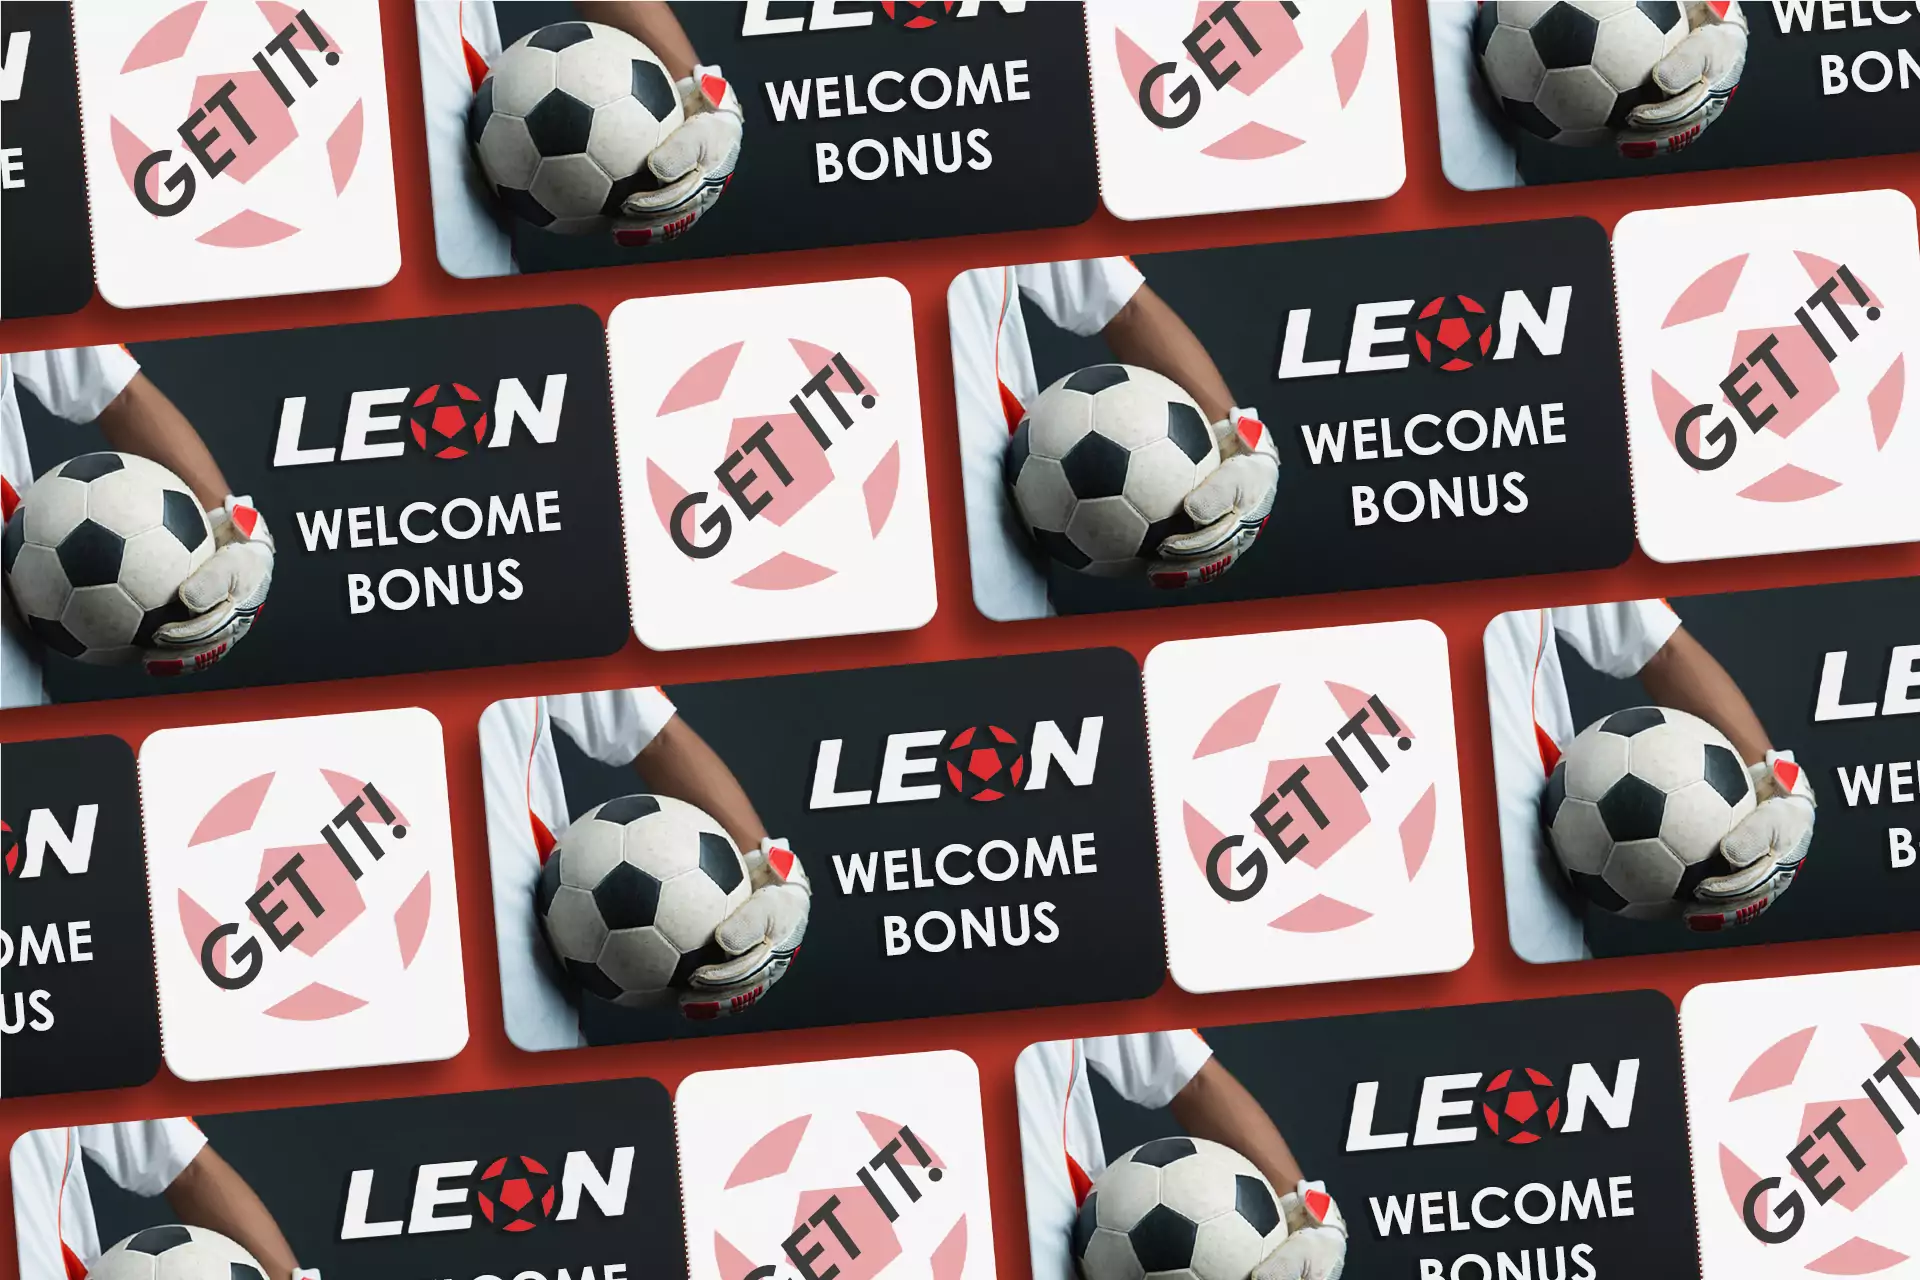 यदि आप Leon Bet में एक नए उपयोगकर्ता हैं तो आप एक स्वागत योग्य बोनस प्राप्त करने पर भरोसा कर सकते हैं।